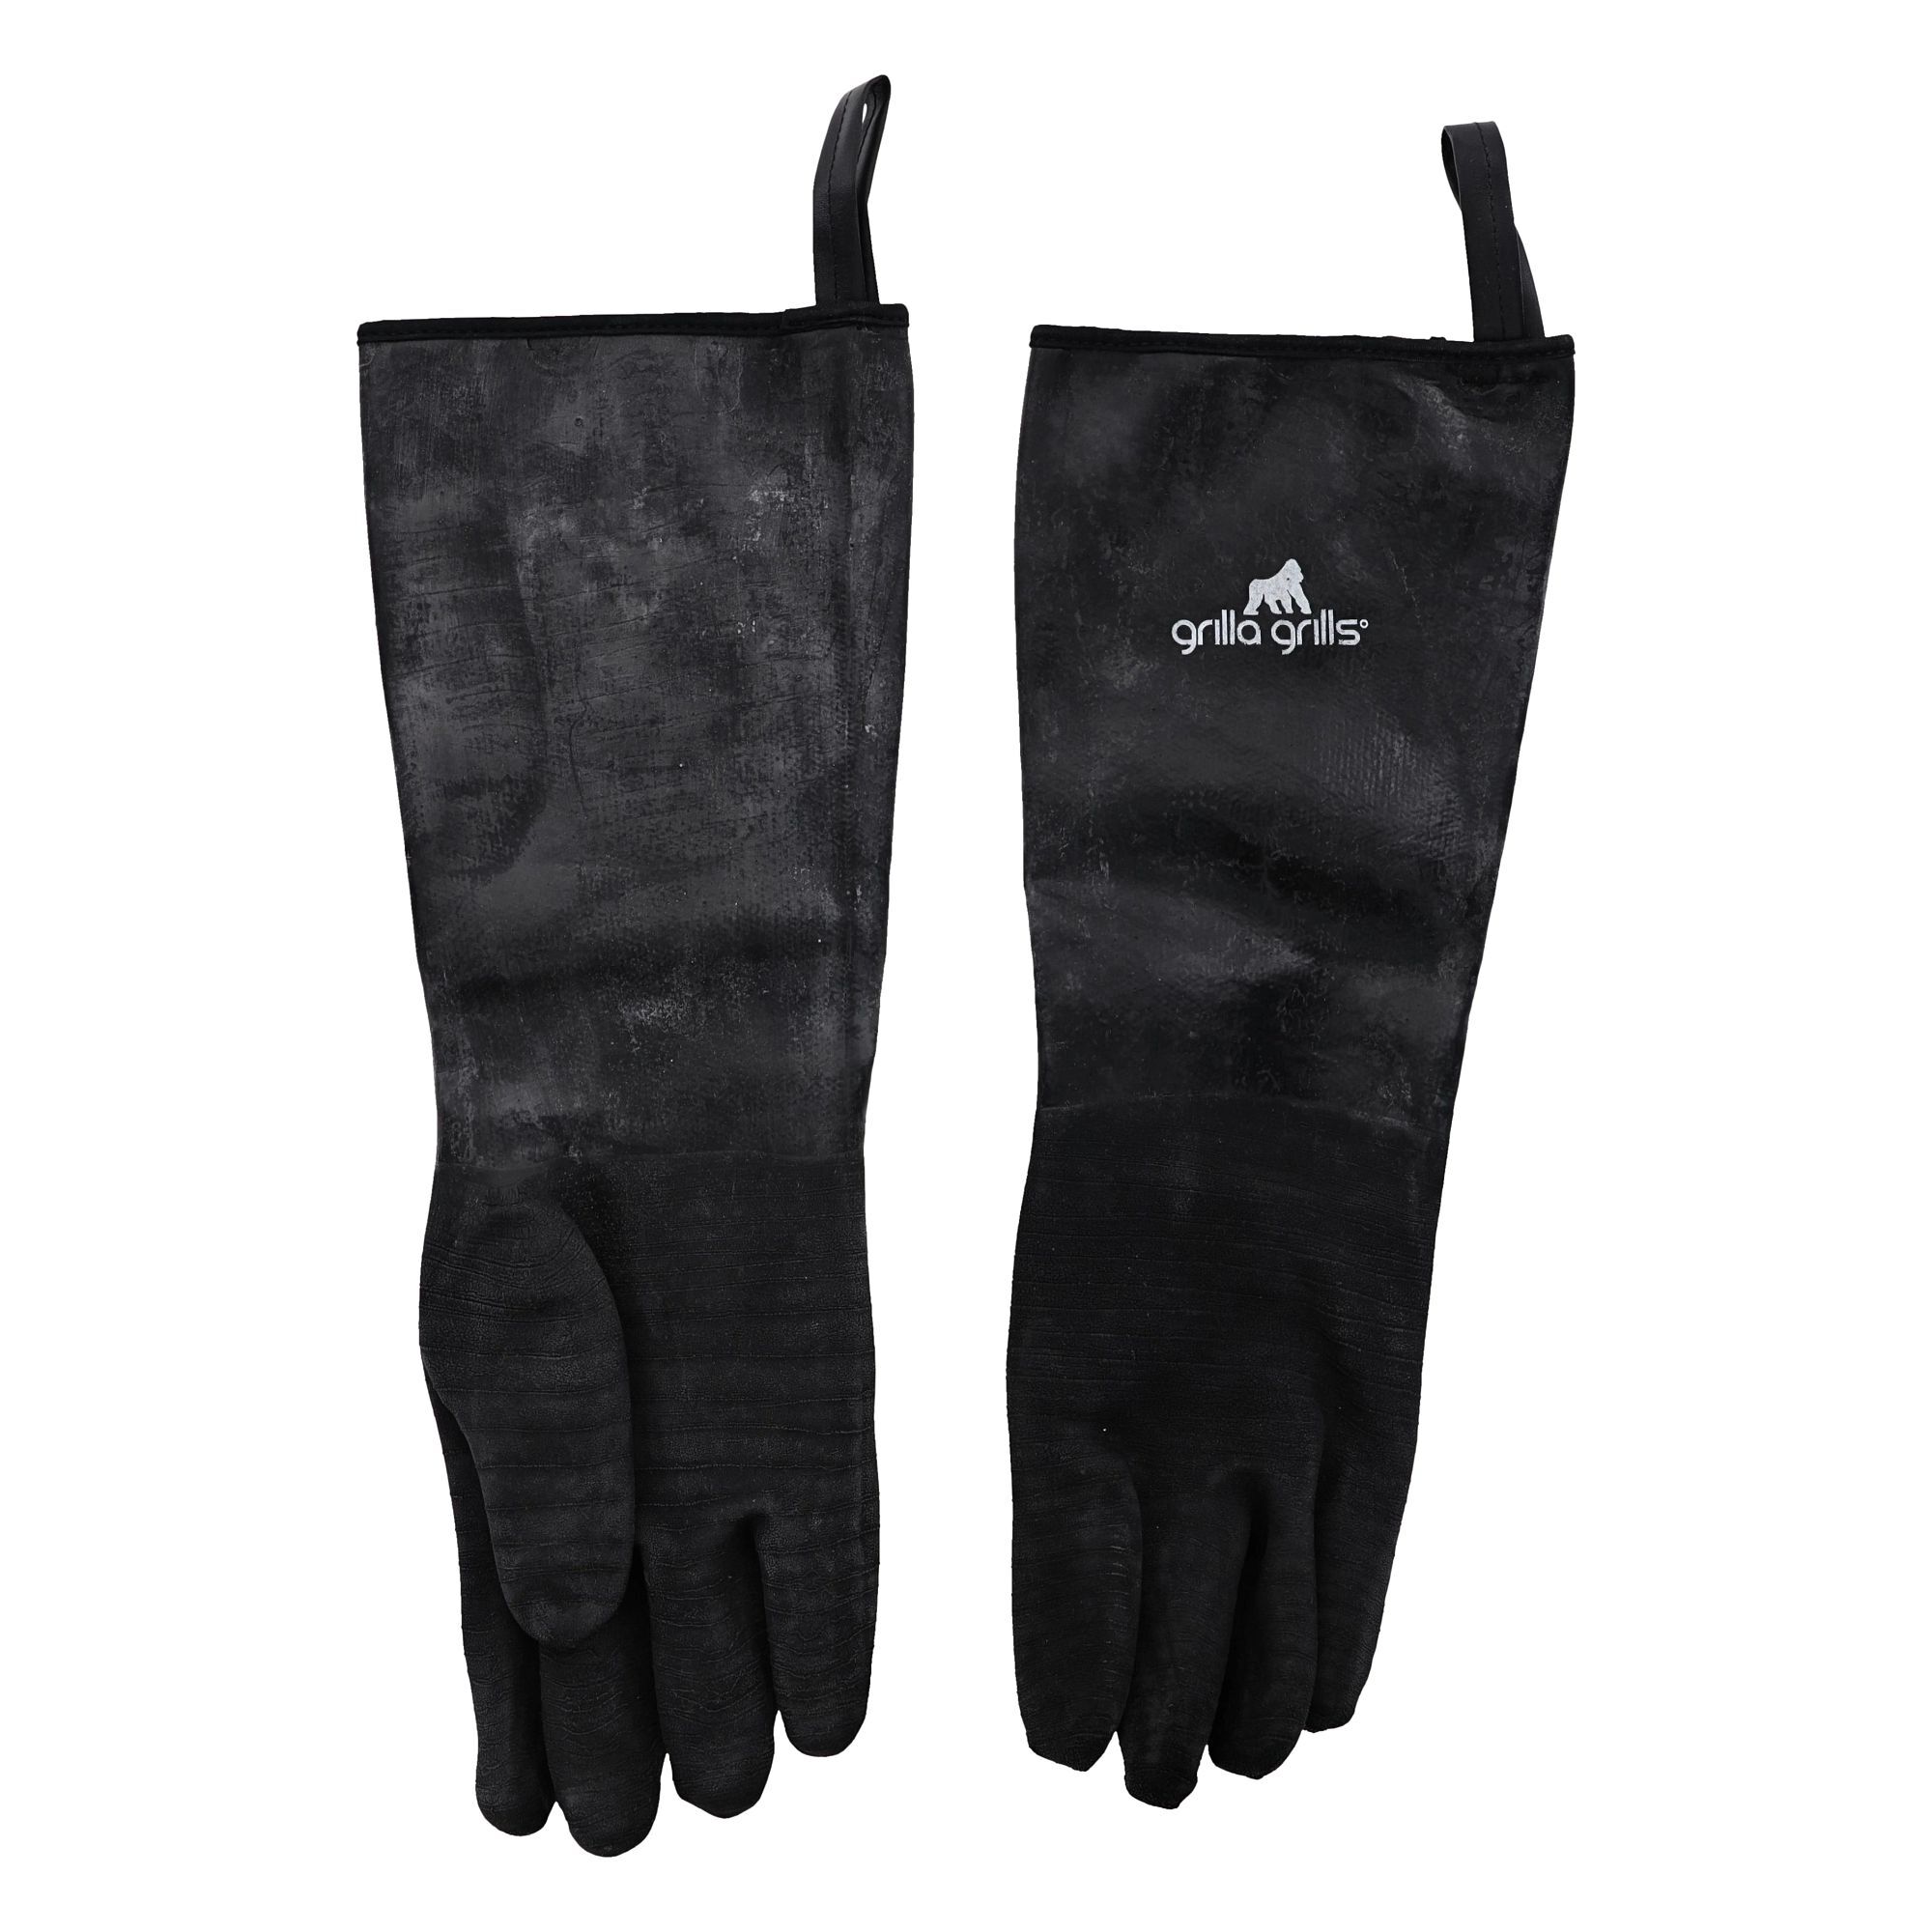 Grilla Gloves